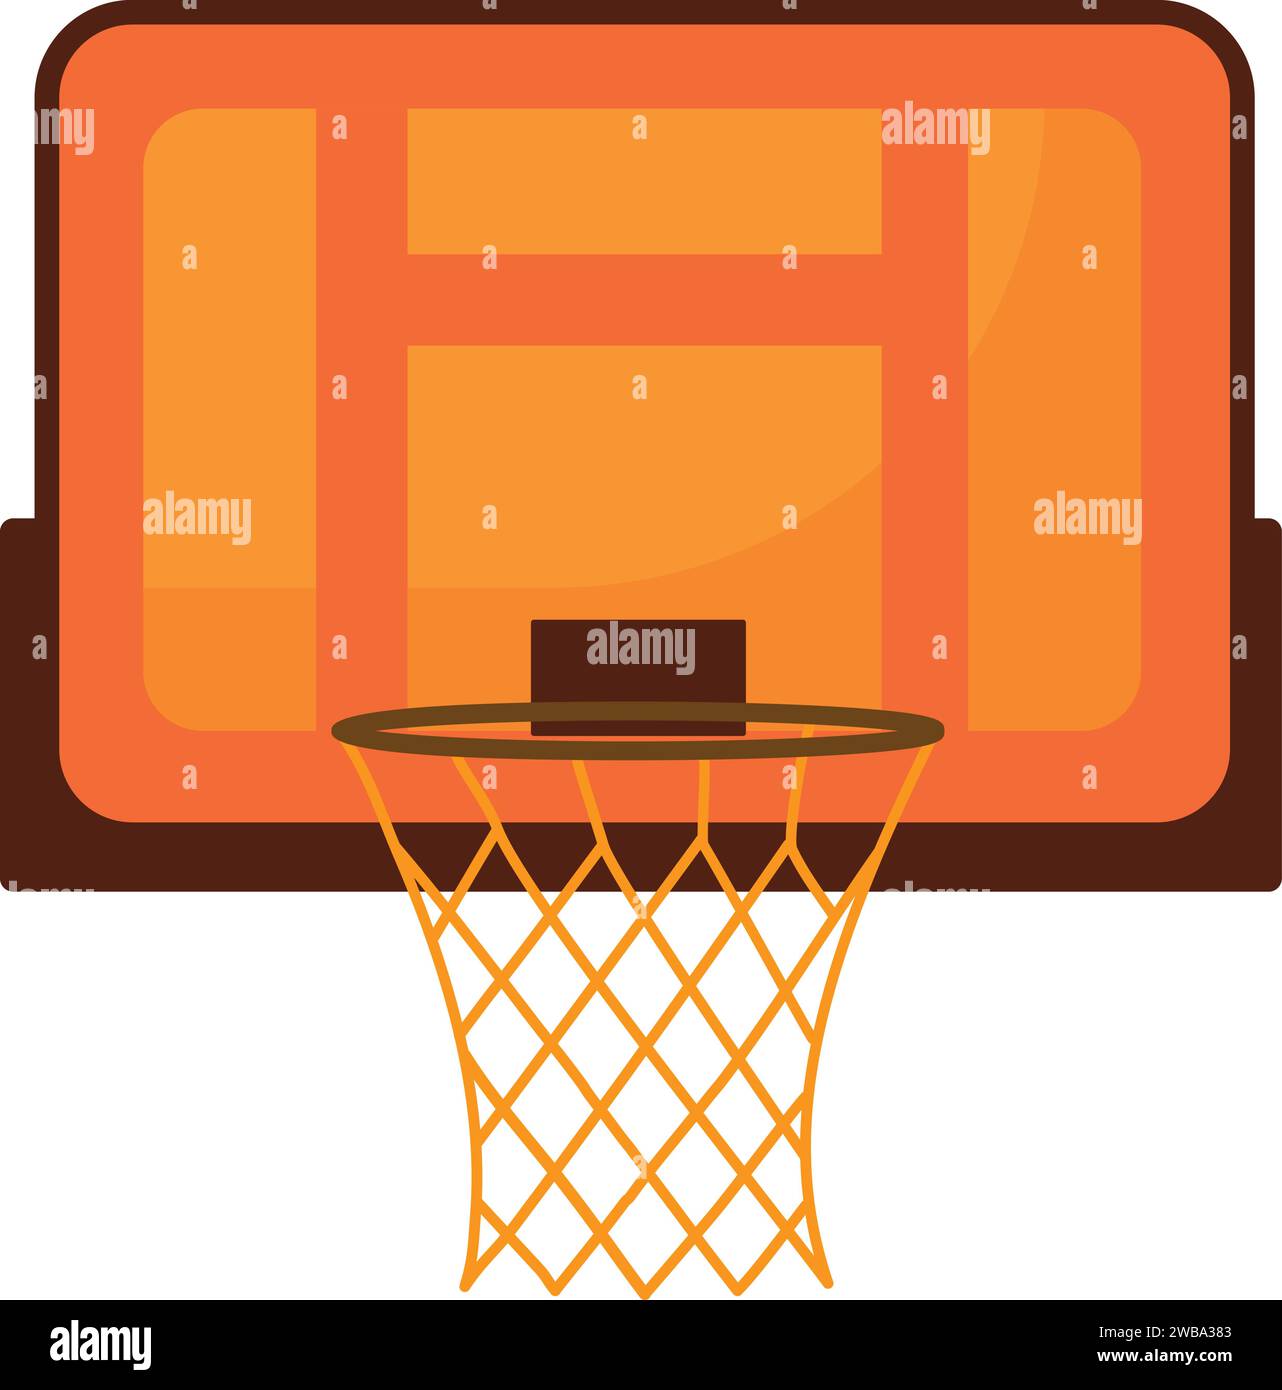 Basketball board icon cartoon vector. Court player game Stock Vector